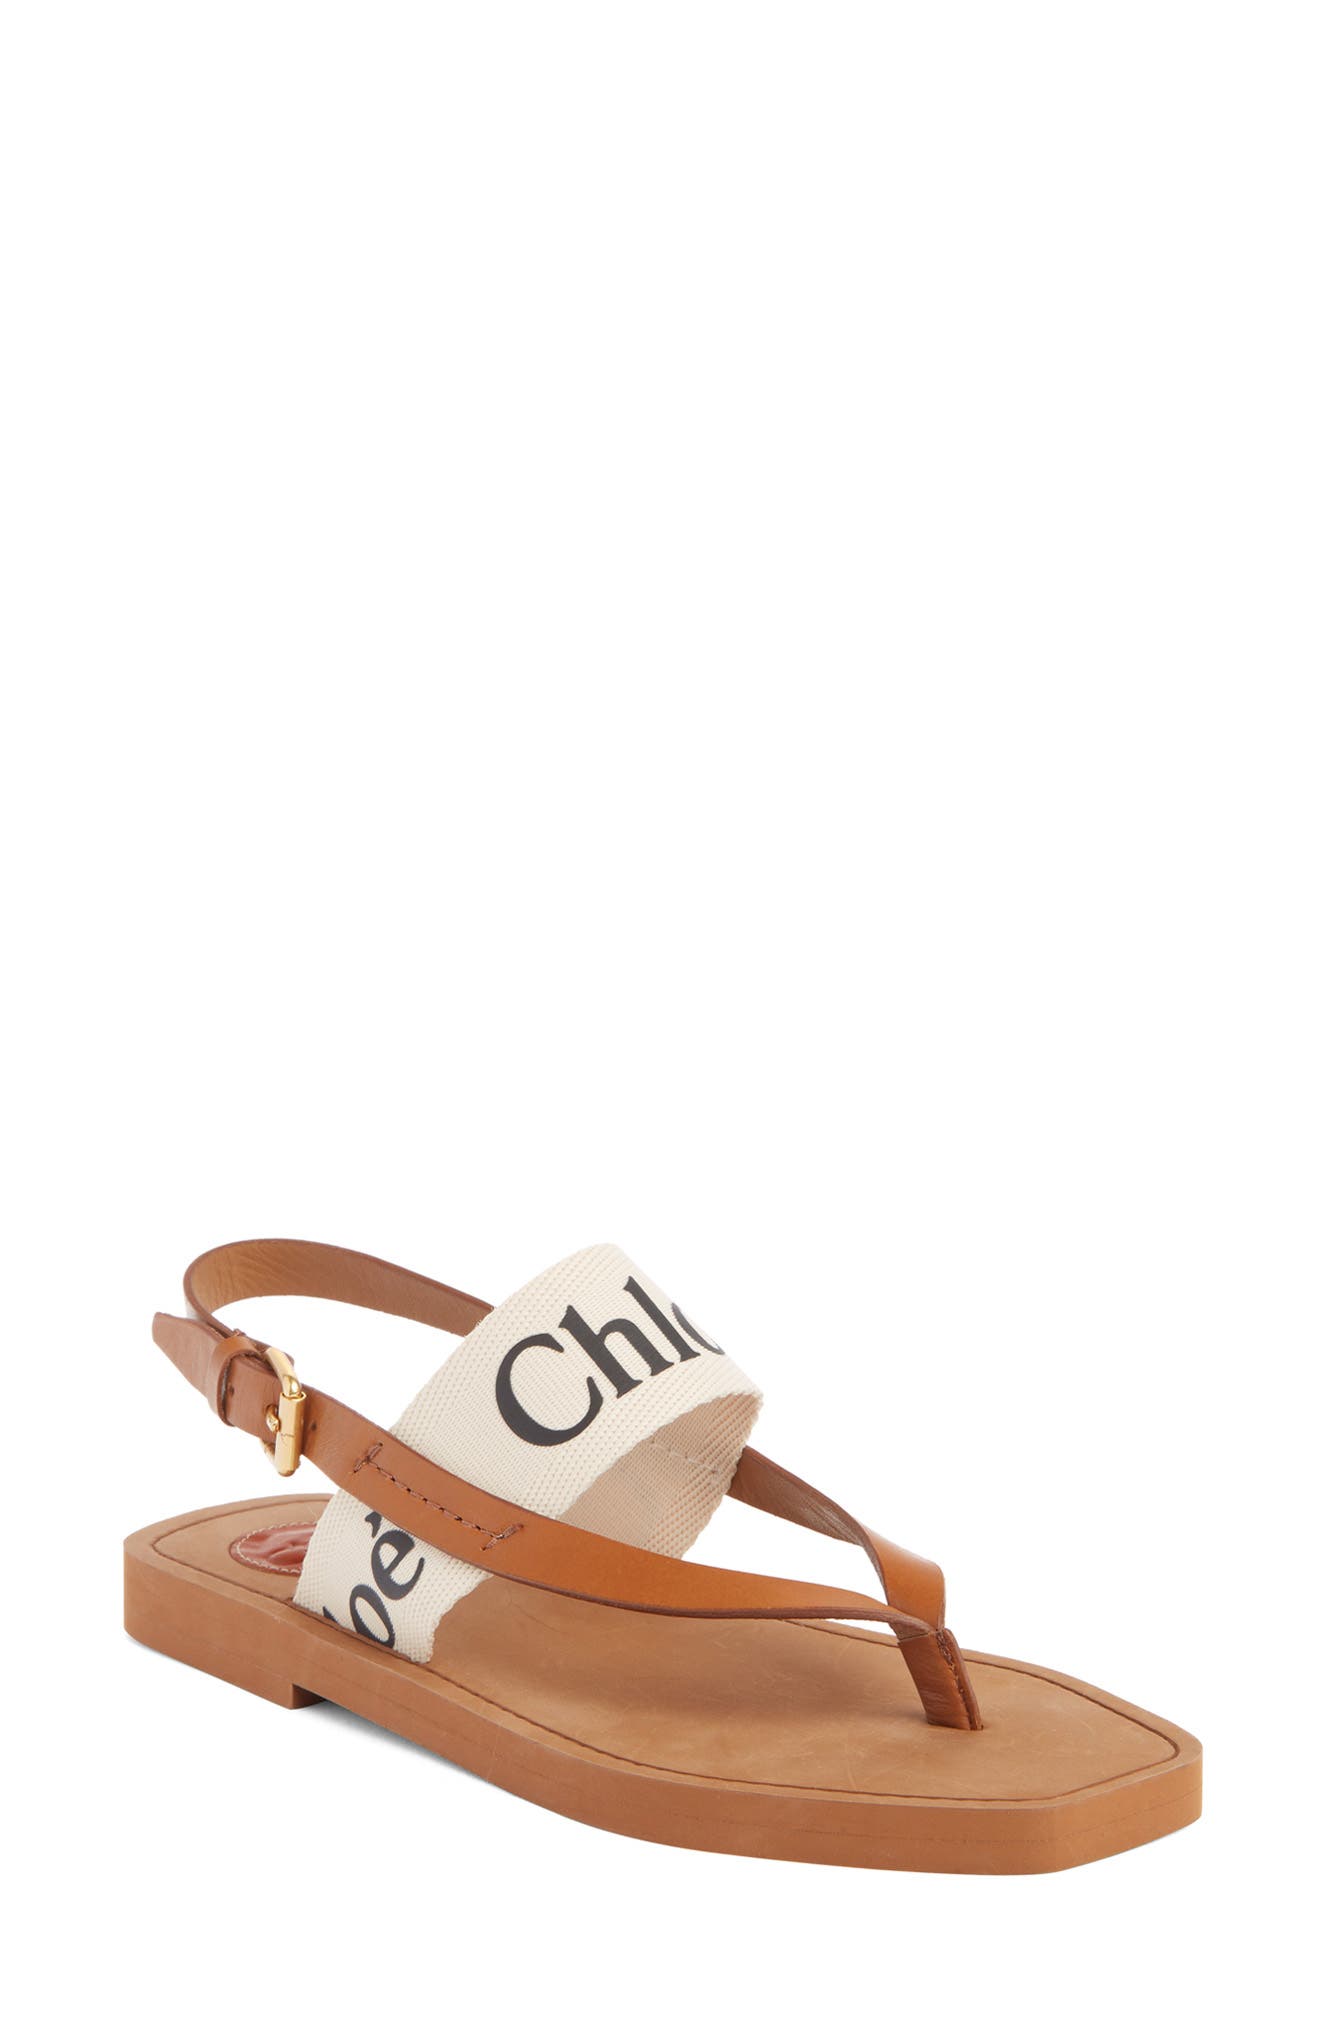 chloe sandal